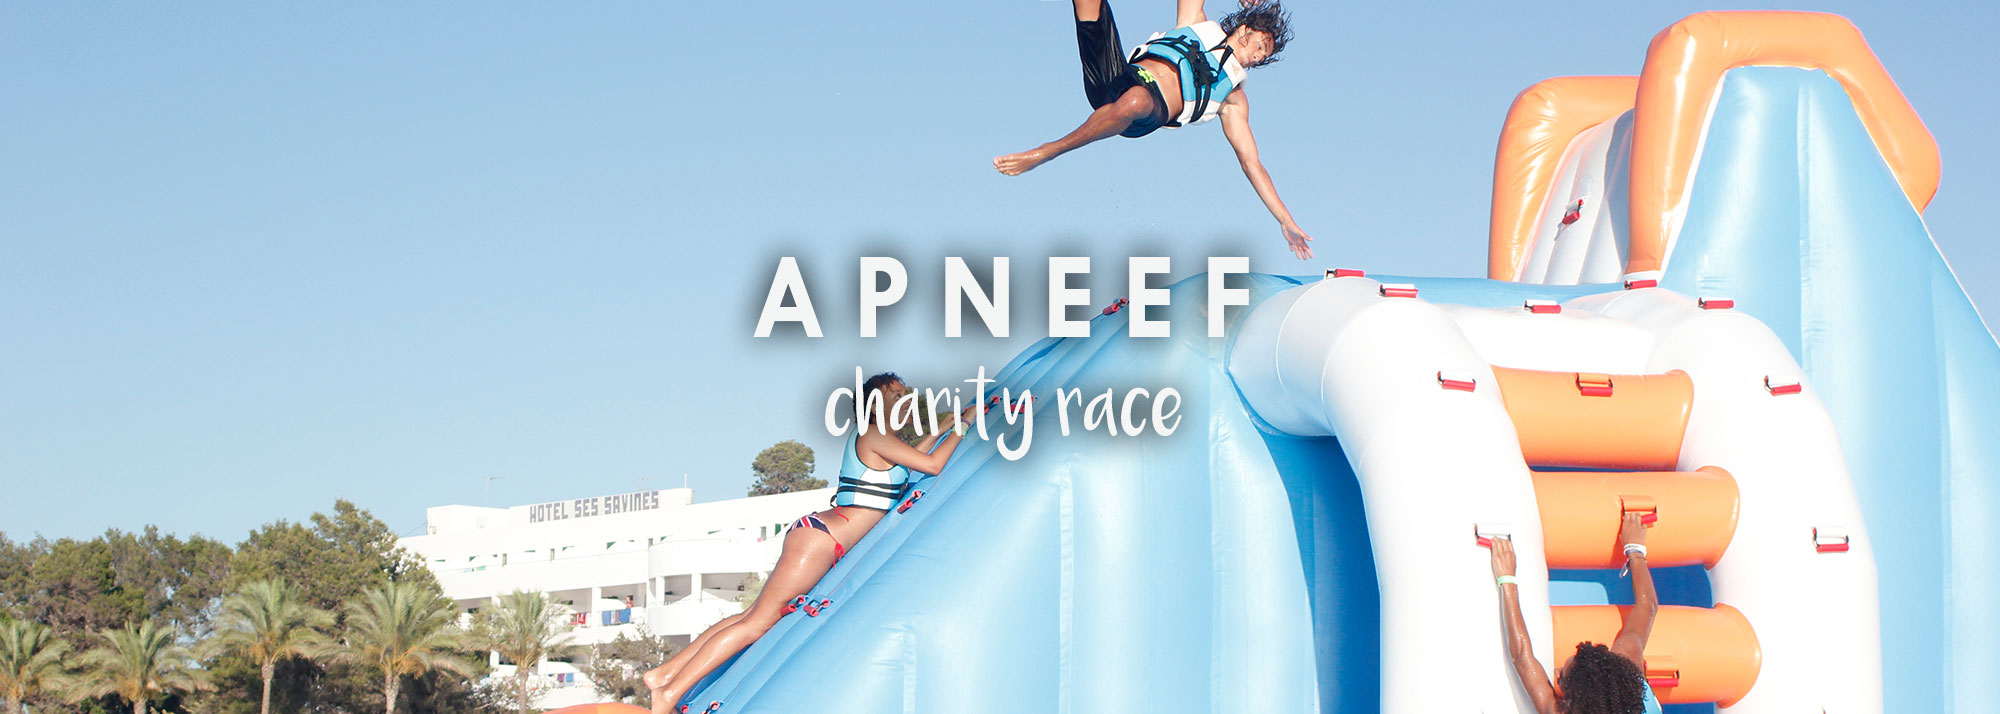 APNEEF Charity Race!